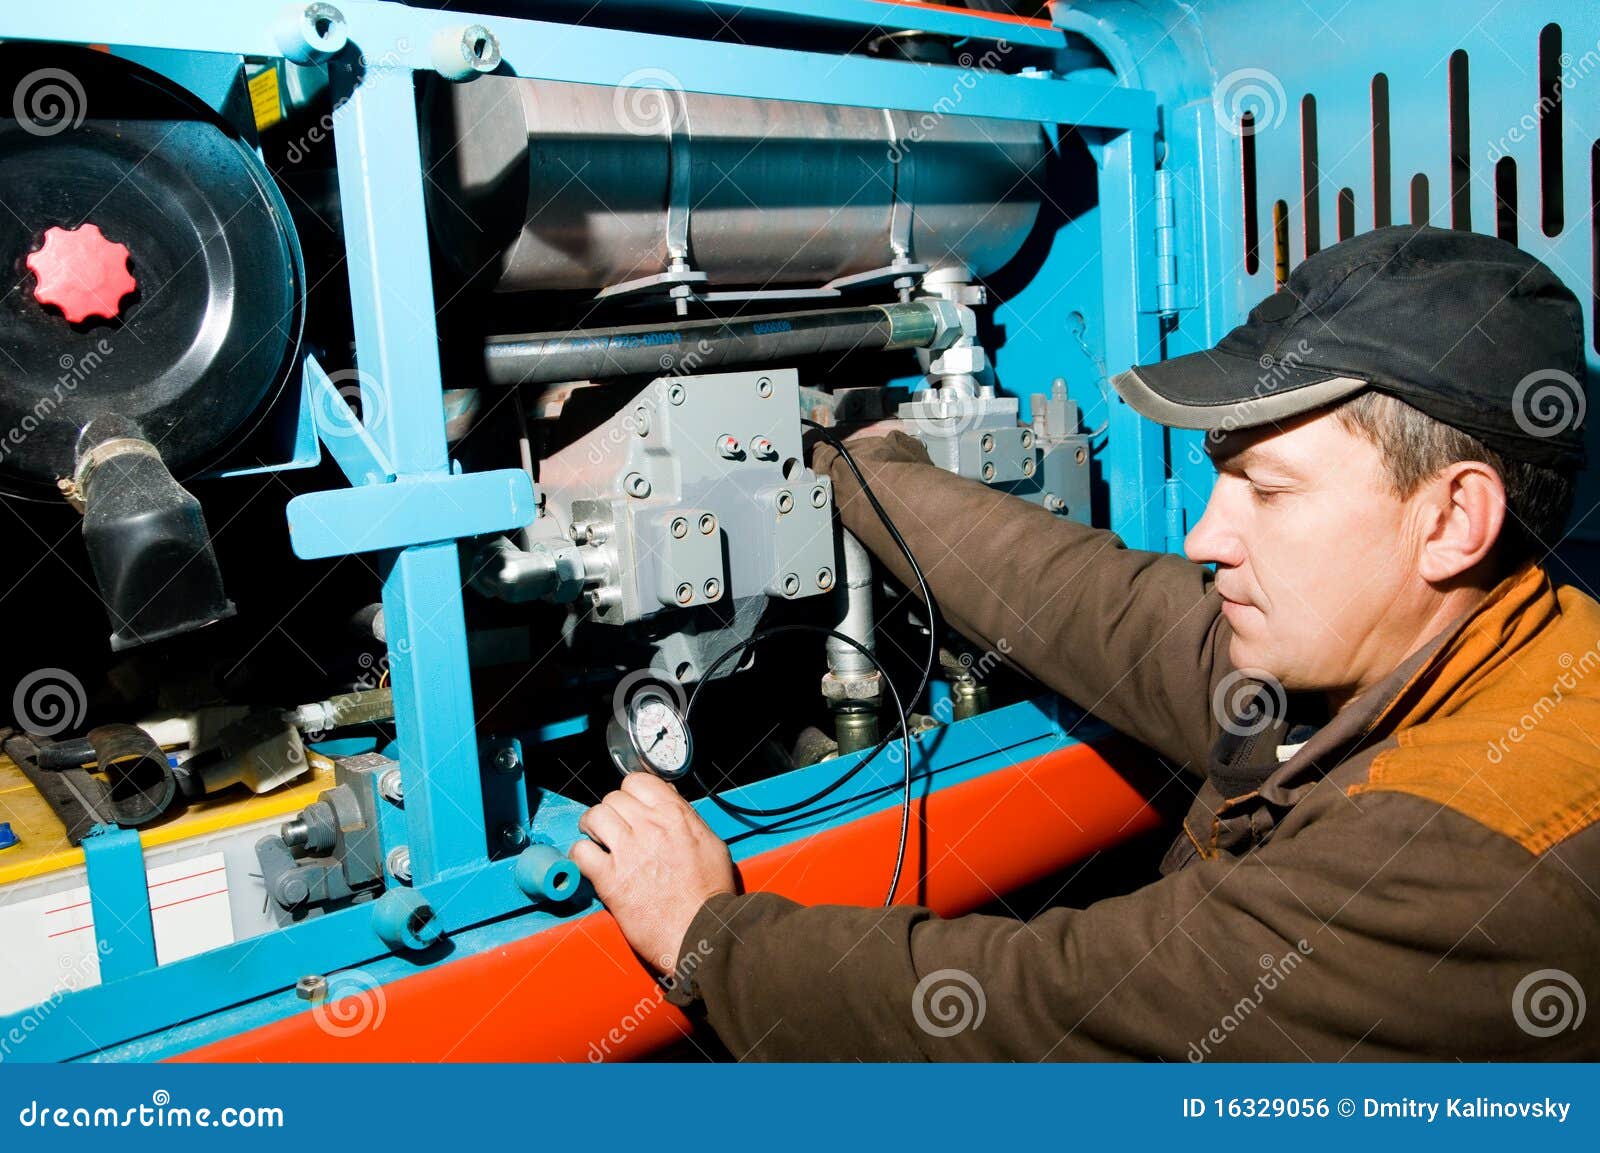 repairman using manometer